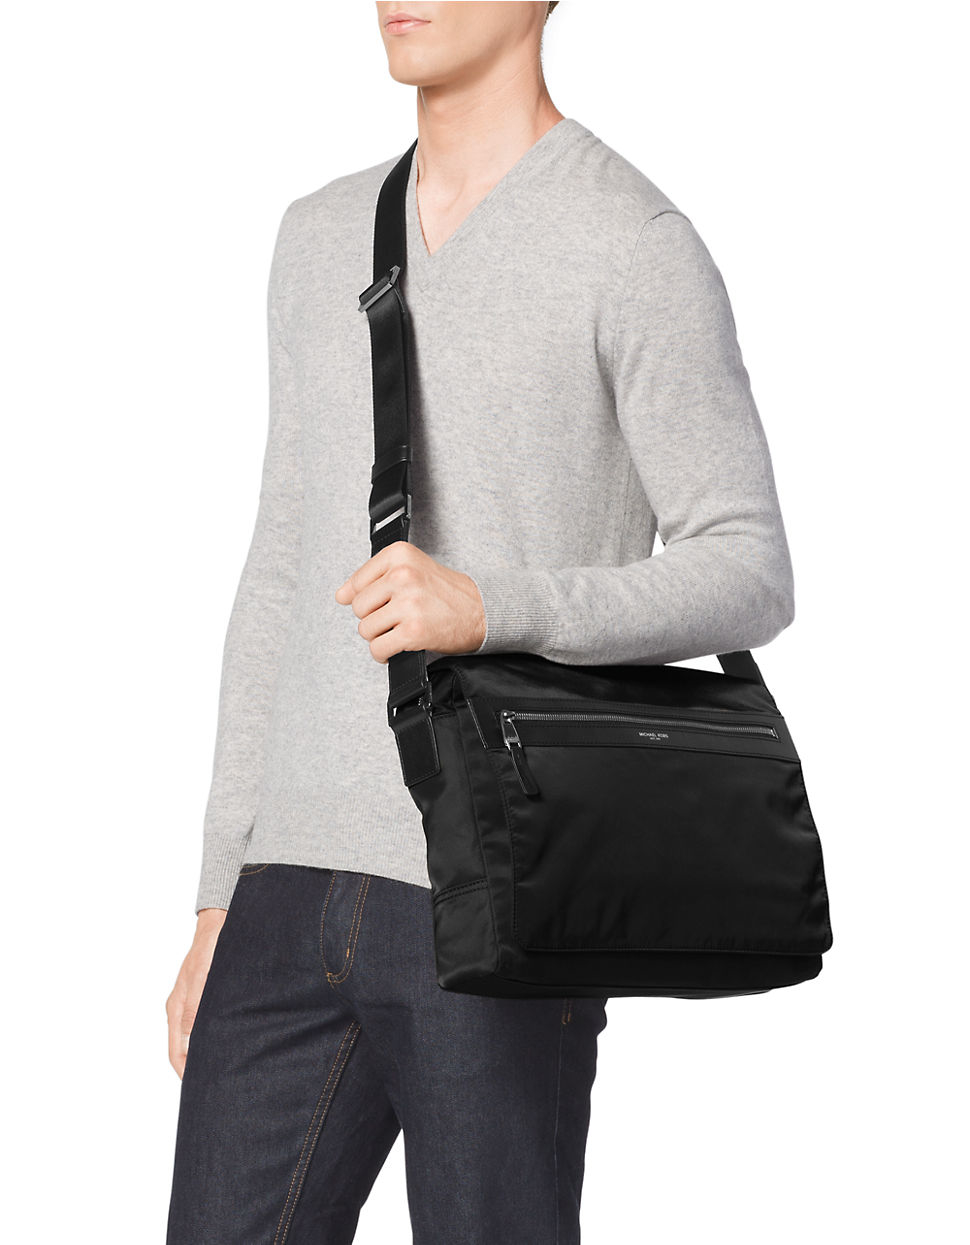 Michael Kors Synthetic Parker Nylon Messenger Bag in Black for Men - Lyst